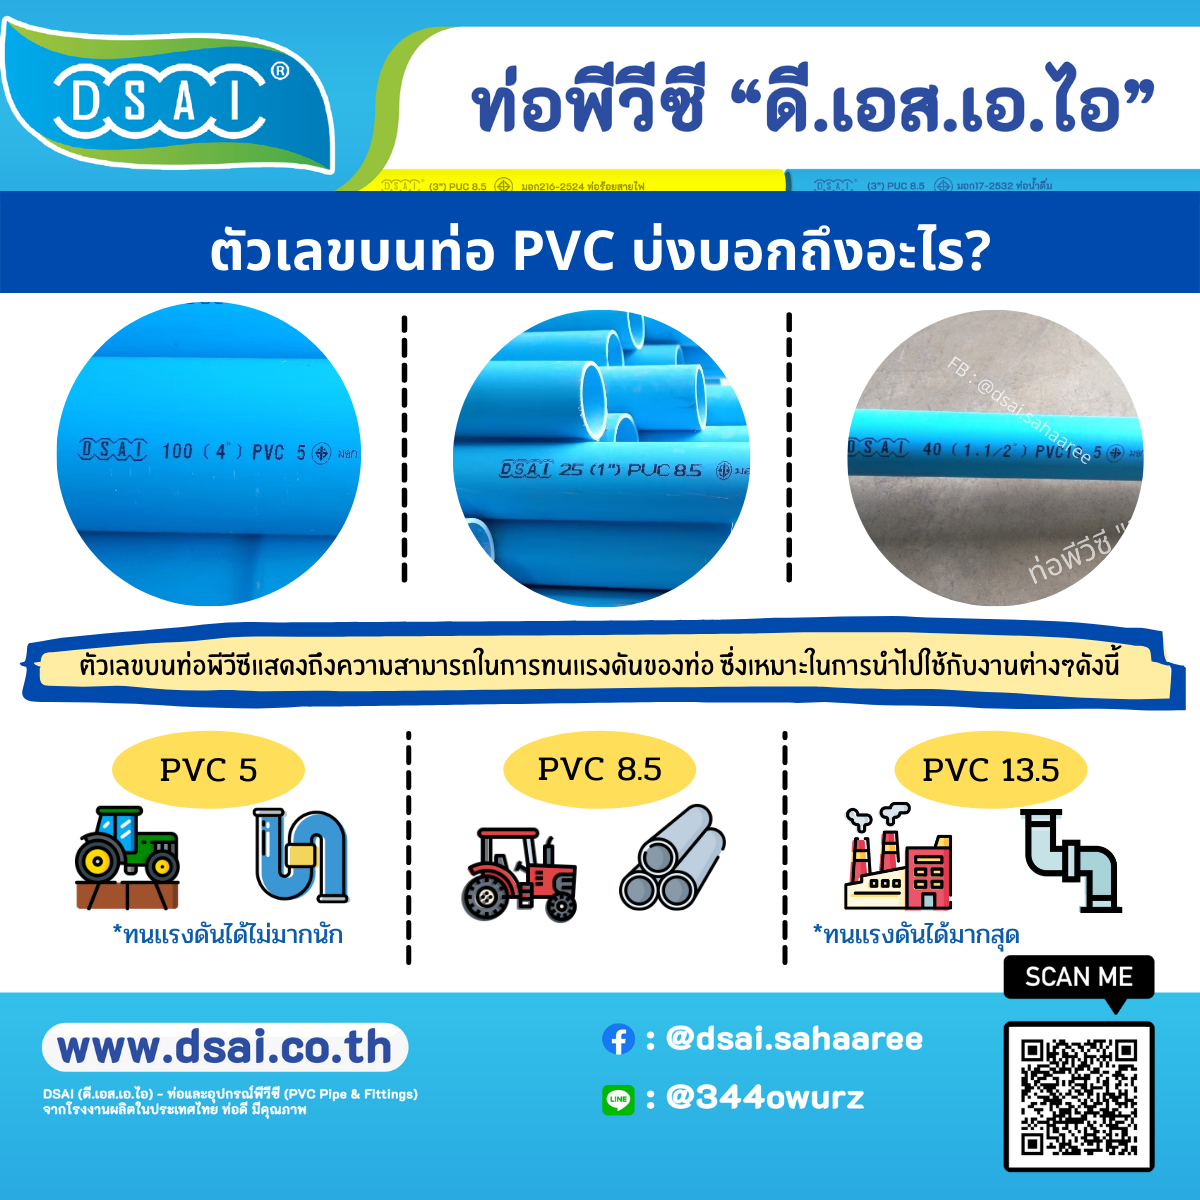 เลขบนท่อพีวีซีคืออะไร ชั้นคุณภาพของท่อพีวีซี  ความหนาของท่อพีวีซี ท่อพีวีซี ( ท่อ PVC ) คืออะไร ตัวเลขที่ระบุชั้นคุณภาพ ( PVC 5 / PVC 8.5 / PVC 13.5 ) นั้นเป็นความสามารถในการทนแรงดันในการใช้งาน คือ ทนแรงดันได้ 5 บาร์ / 8.5 บาร์ / 13.5 บาร์